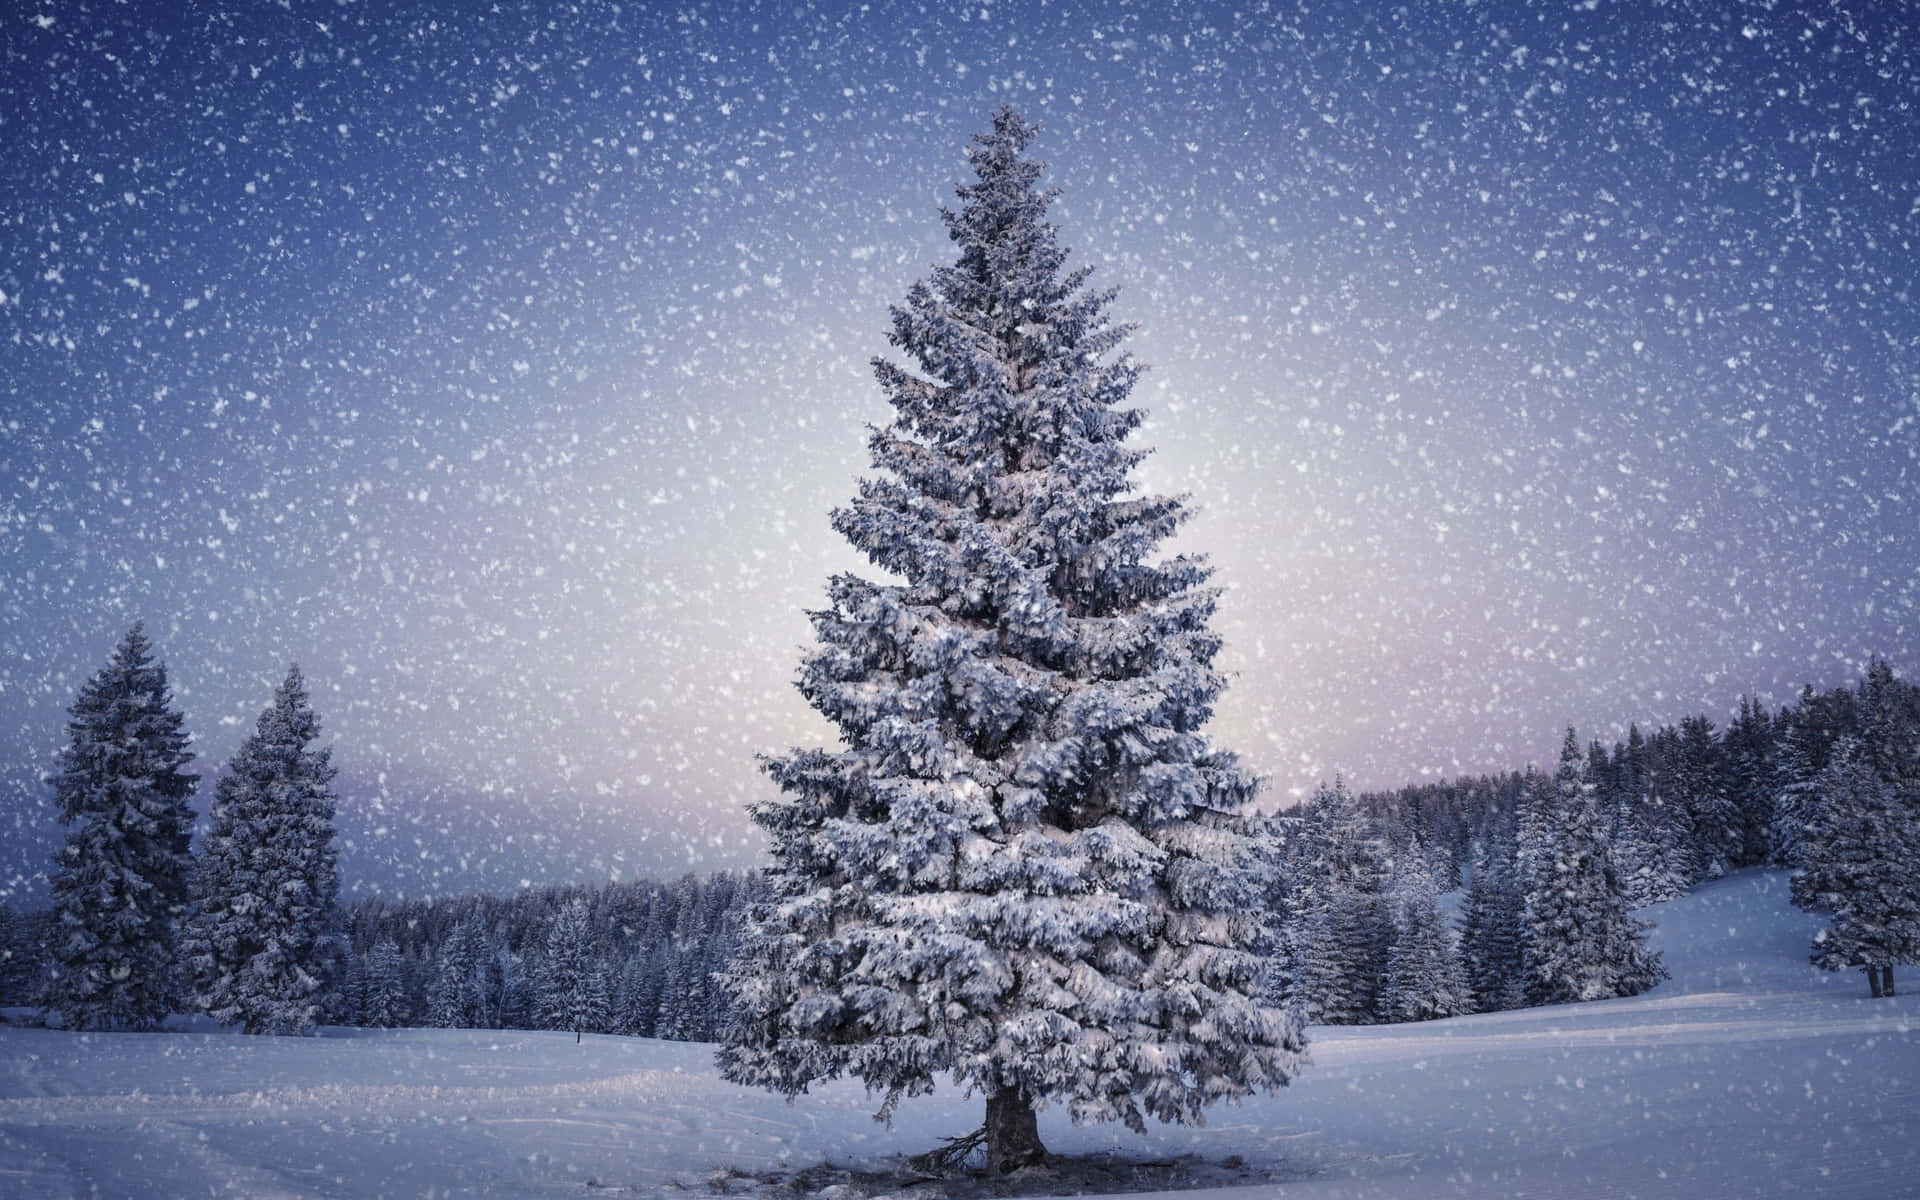 Genießensie Die Schönheit Eines Weißen Weihnachtsfestes, Während Schnee Die Landschaft Bedeckt. Wallpaper